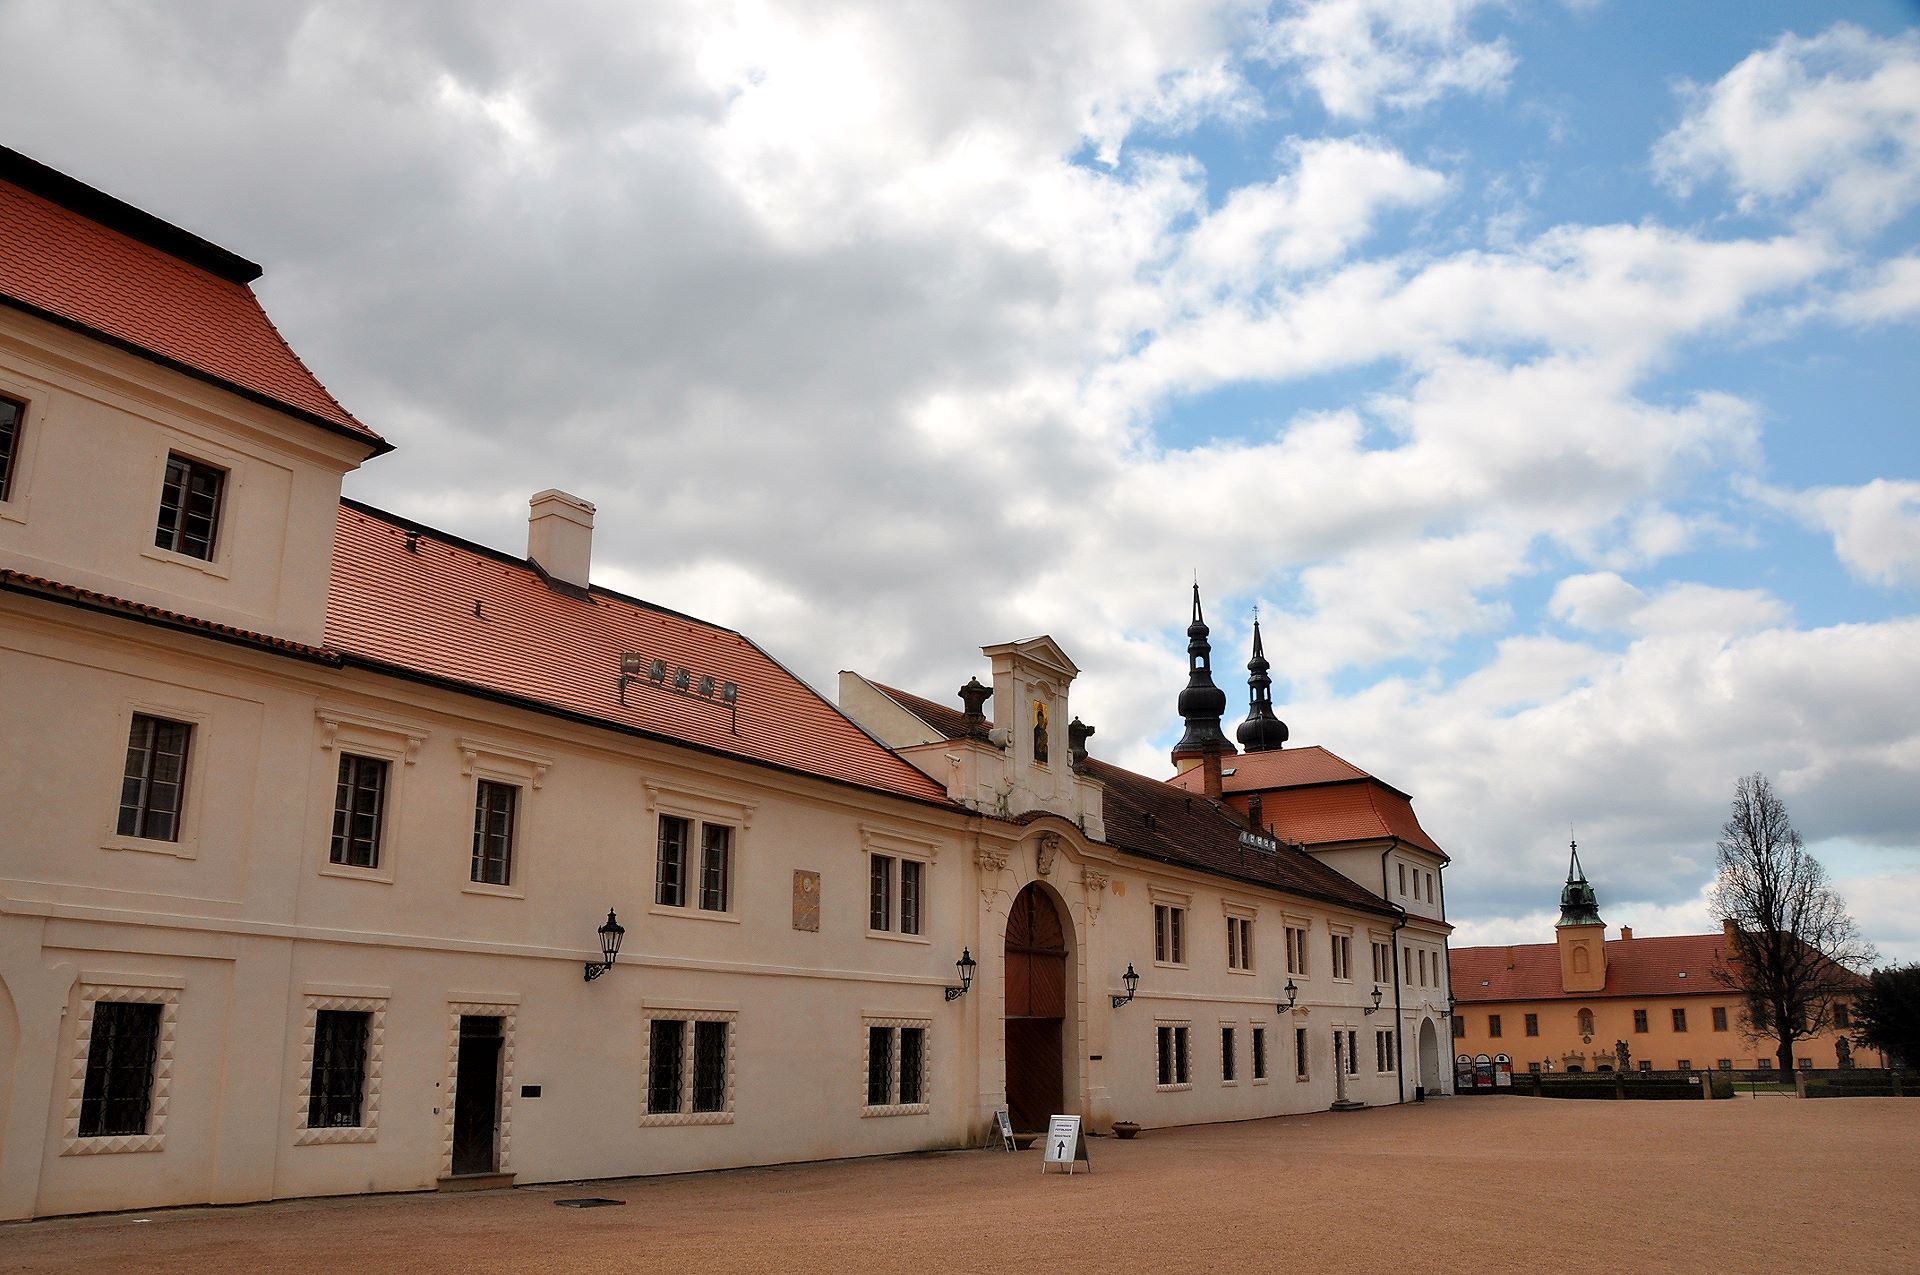 Brauerei am Schlossareal, hier wurde der komponist Friedrich Smetana geboren